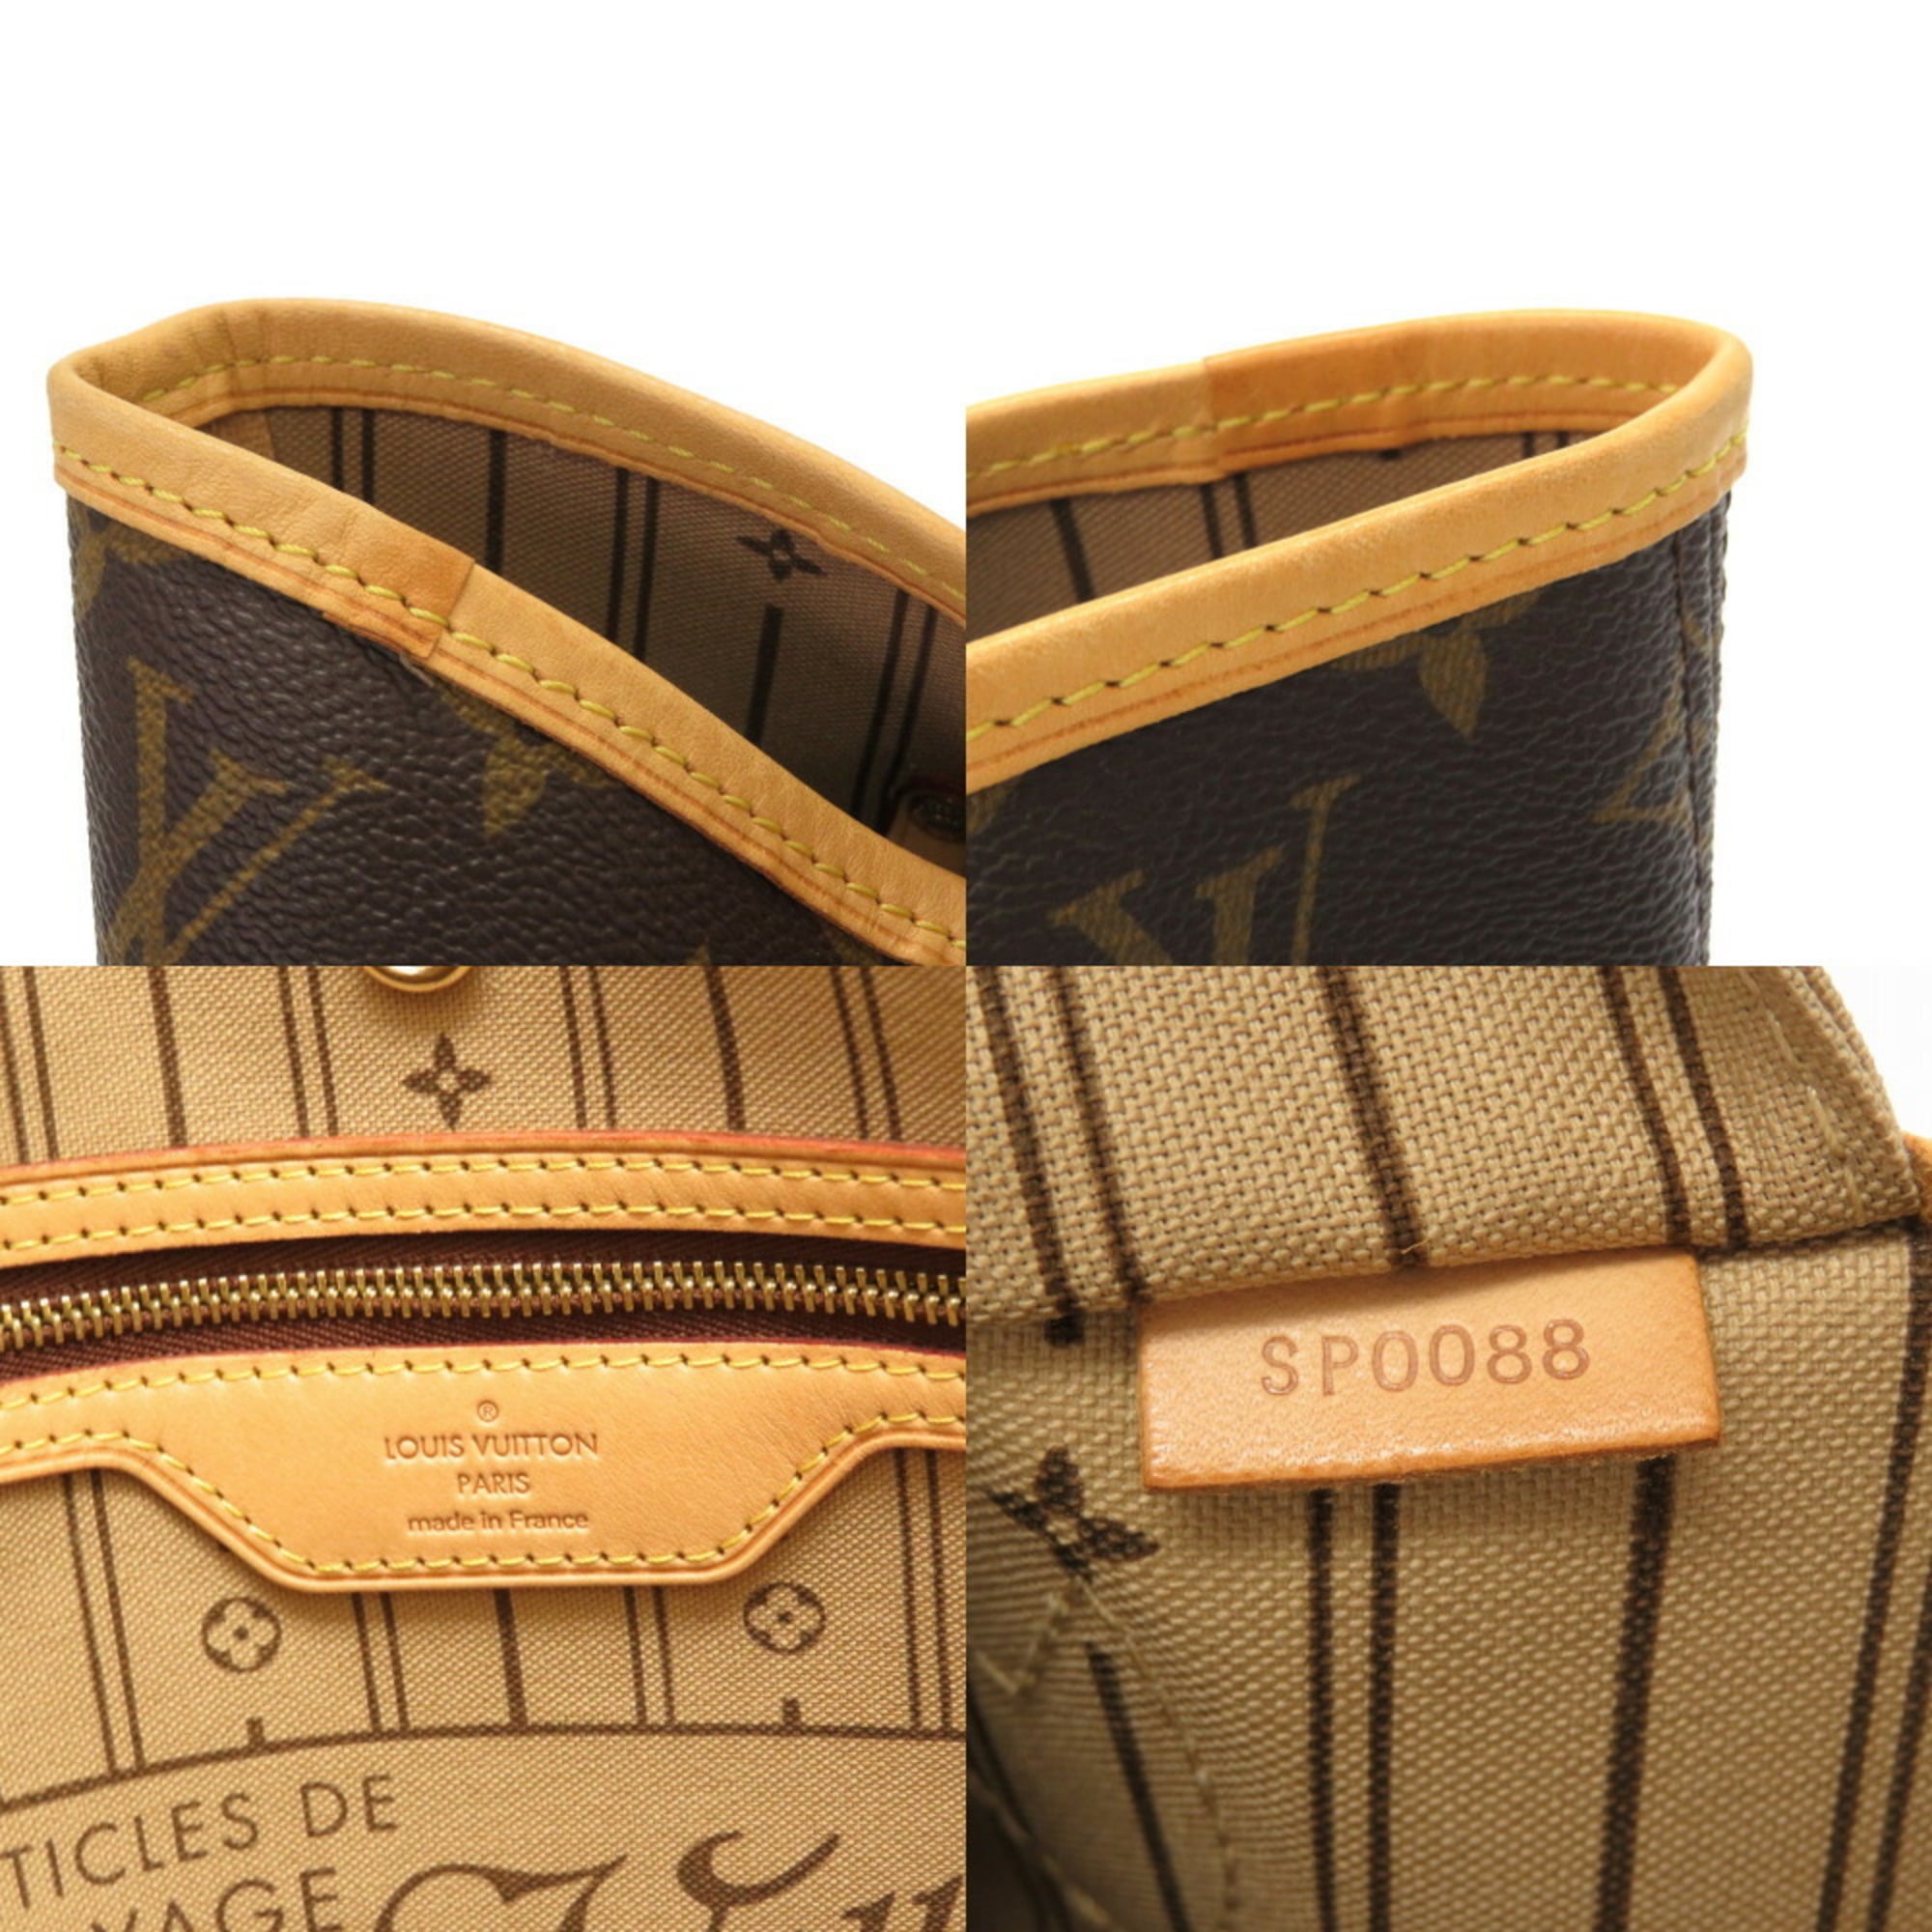 Authenticated used Louis Vuitton Monogram Neverfull mm M40156 Tote Bag LV 0073 Louis Vuitton, Adult Unisex, Size: (HxWxD): 29cm x 31cm x 15cm / 11.41